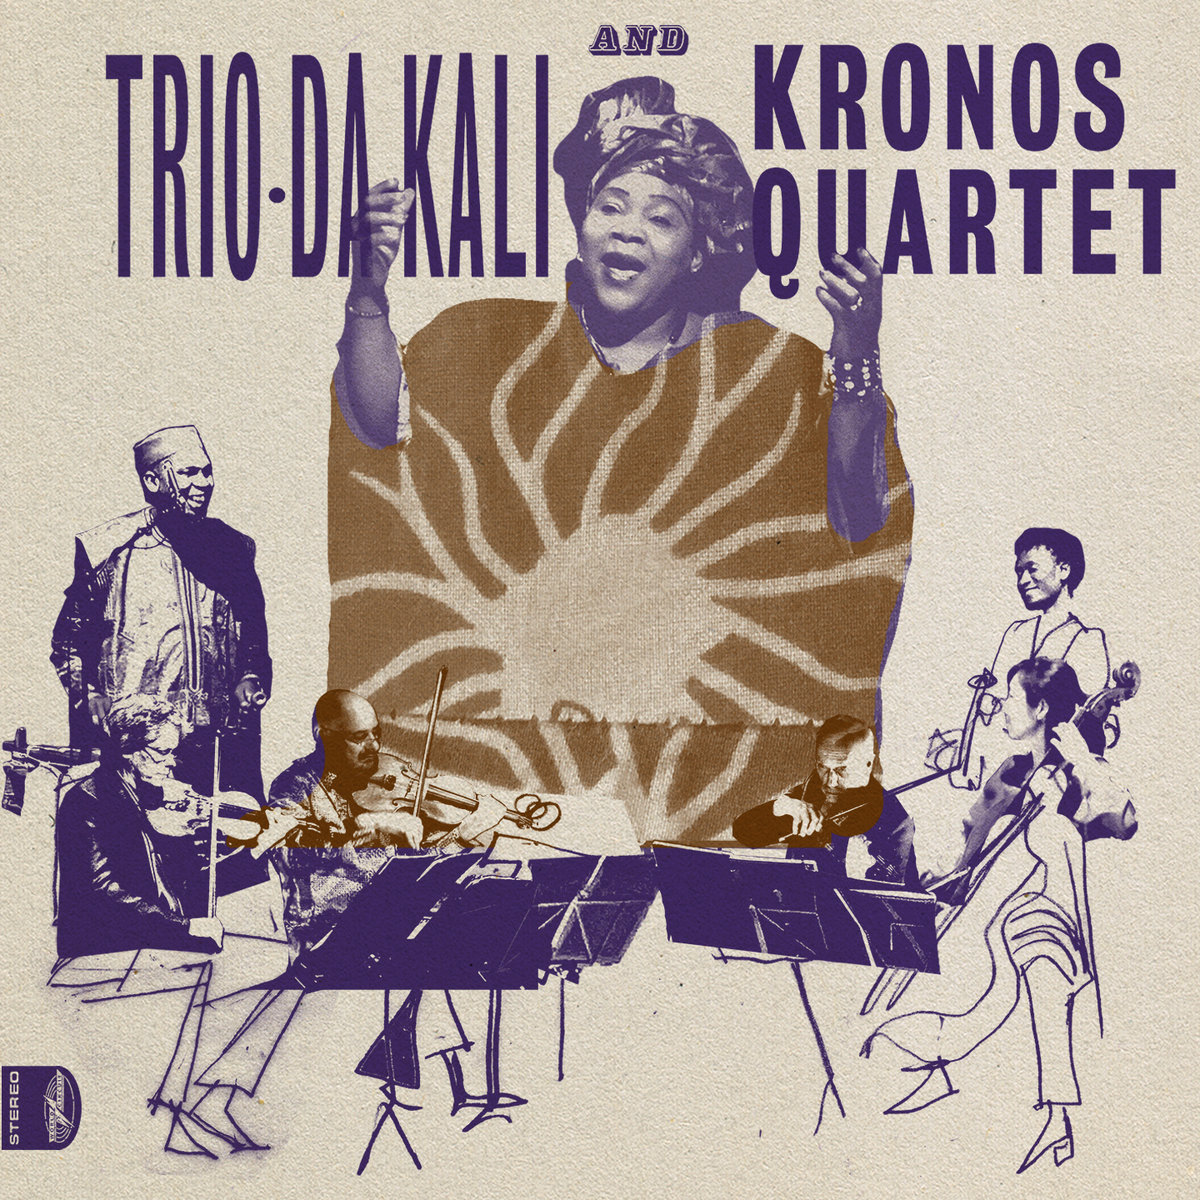 I migliori dischi world del 2017: Trio Da Kali e Kronos Quartet